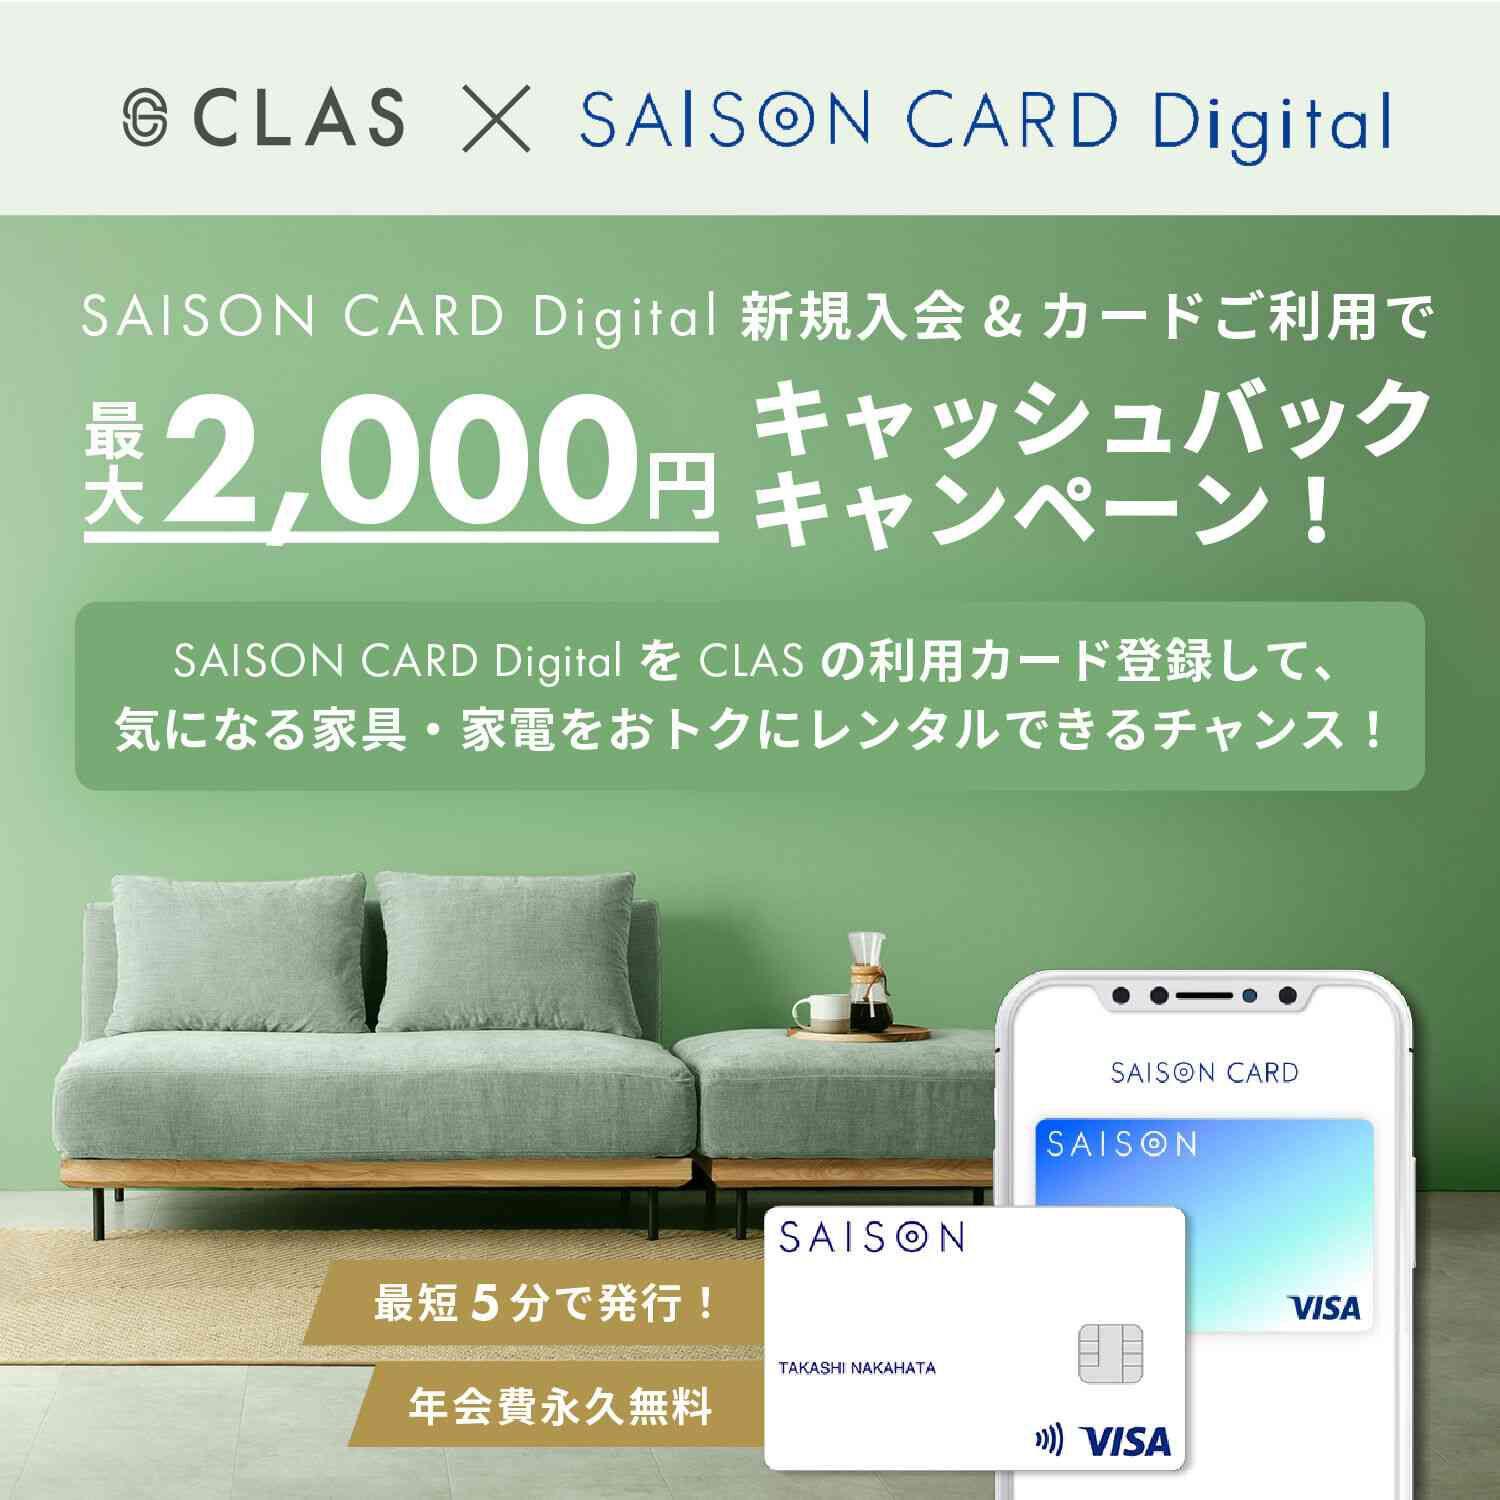 CLAS×SAISON CARD Digitalキャッシュバックキャンペーン